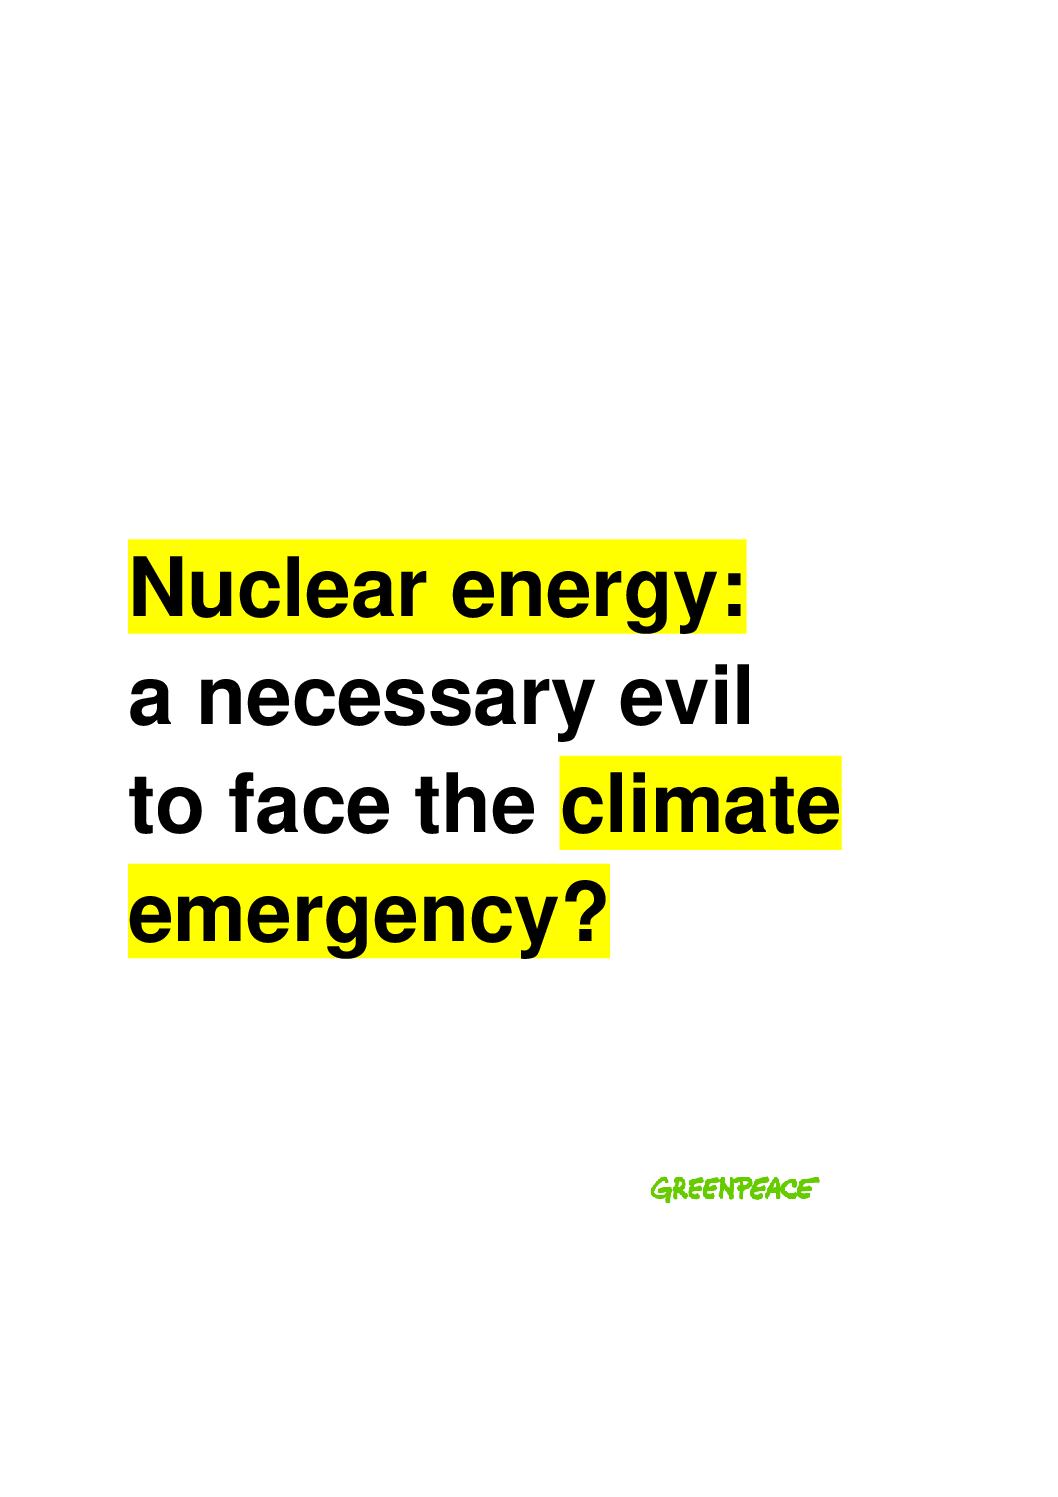 Le nucléaire : un mal nécessaire face à l’urgence climatique ?